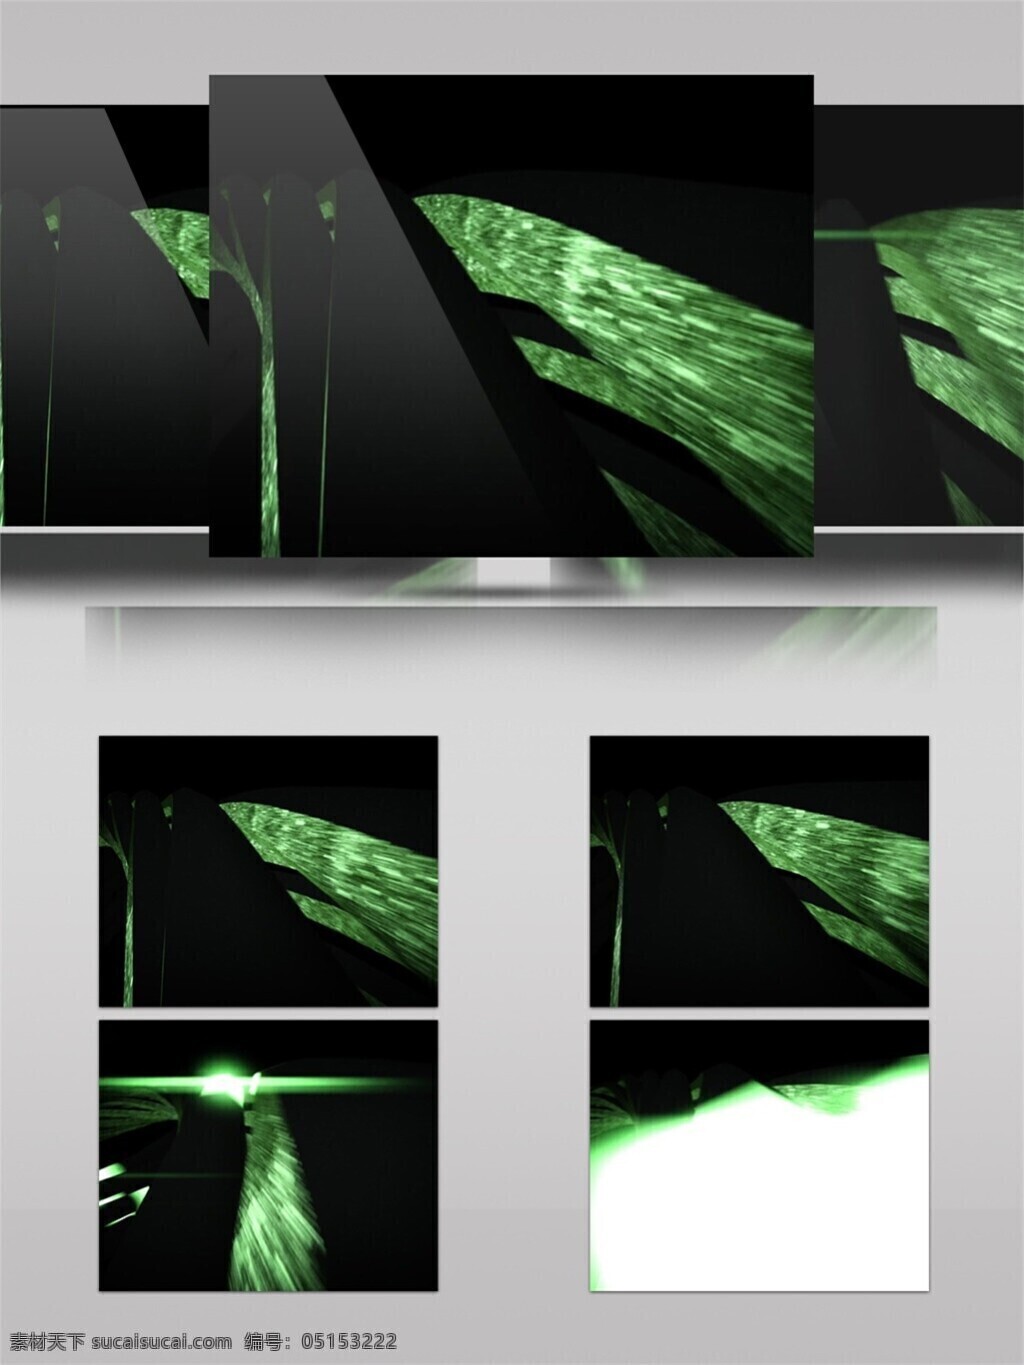 光斑散射 光束 激光 绿色 视觉享受 手机壁纸 星际 瀑布 视频